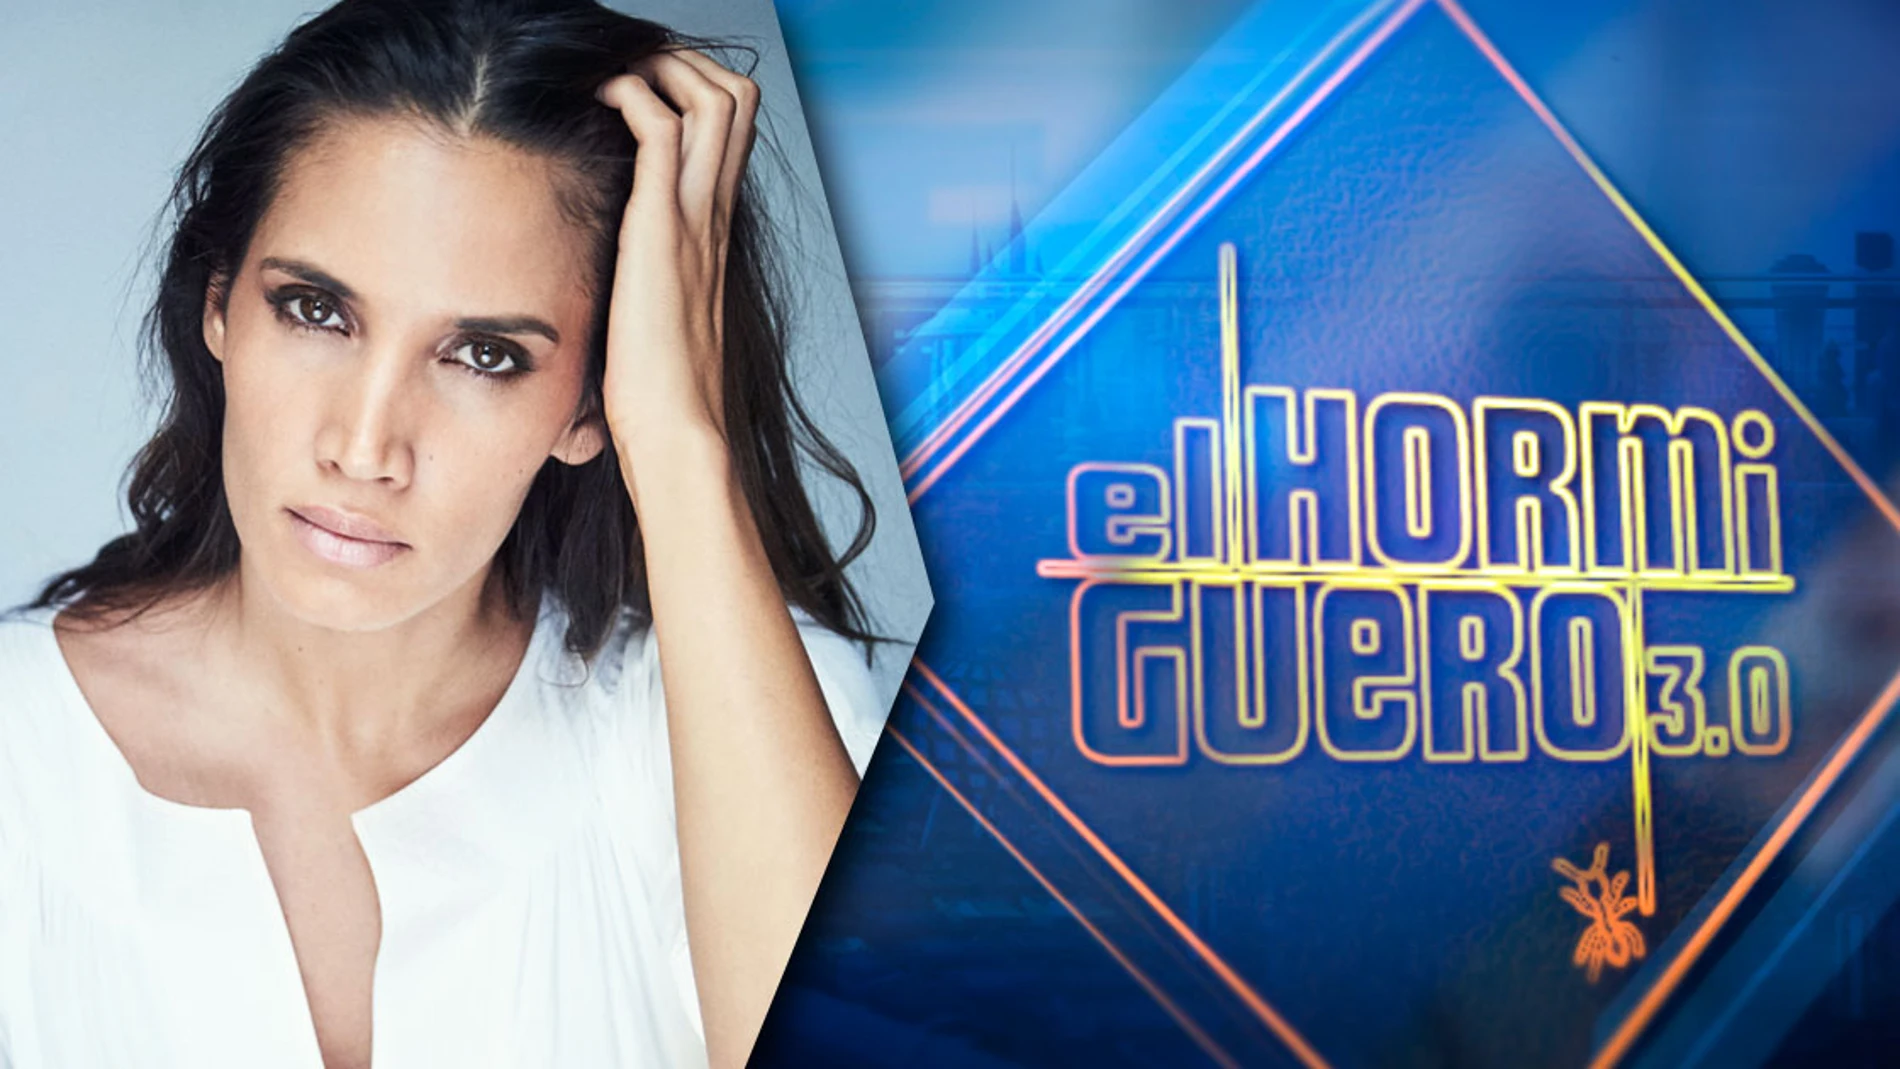 La cantante India Martínez visita 'El Hormiguero 3.0' el lunes 2 de noviembre